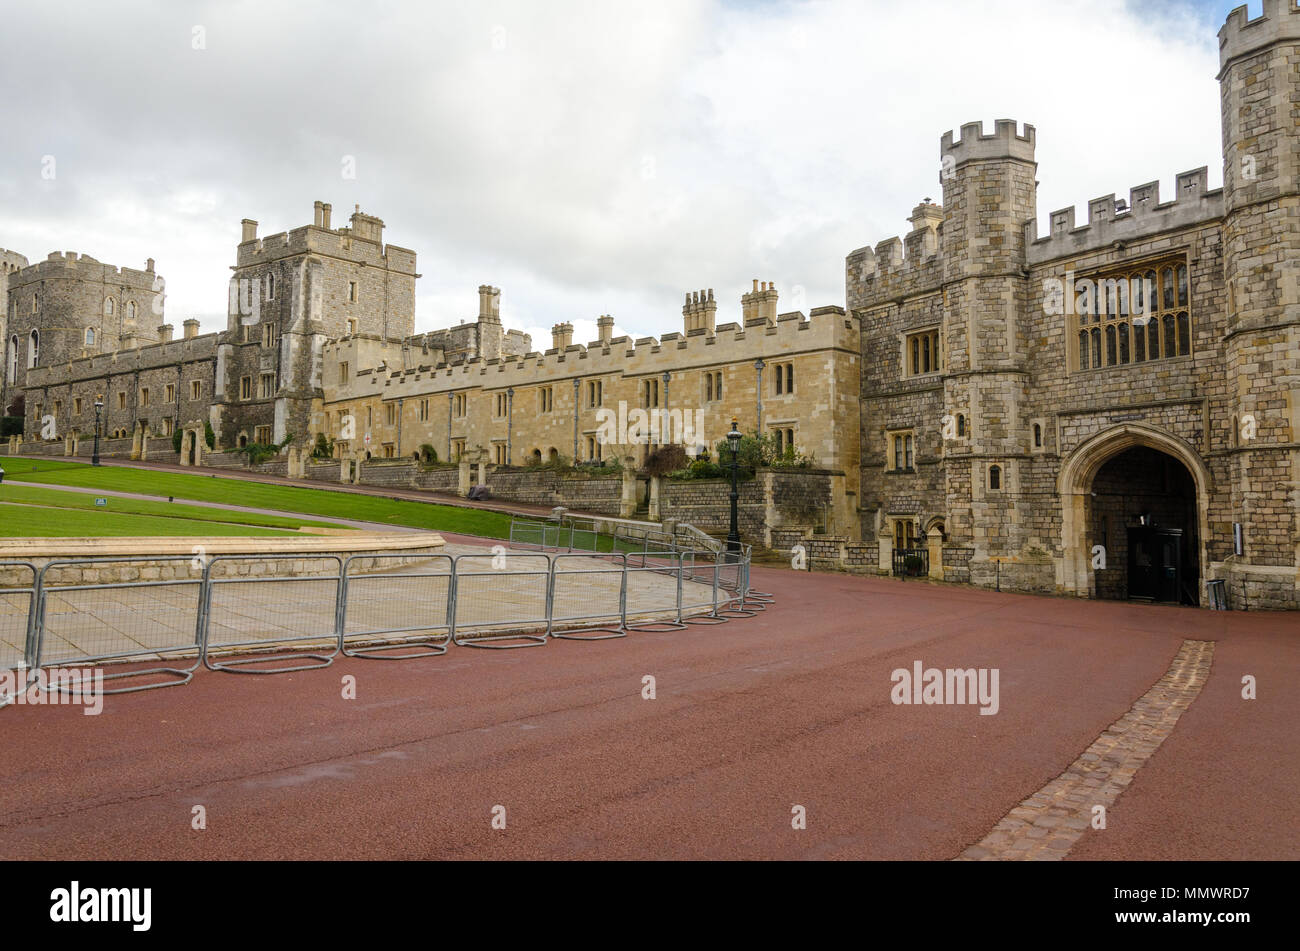 Royal Windsor Castle,UK,England Stock Photo